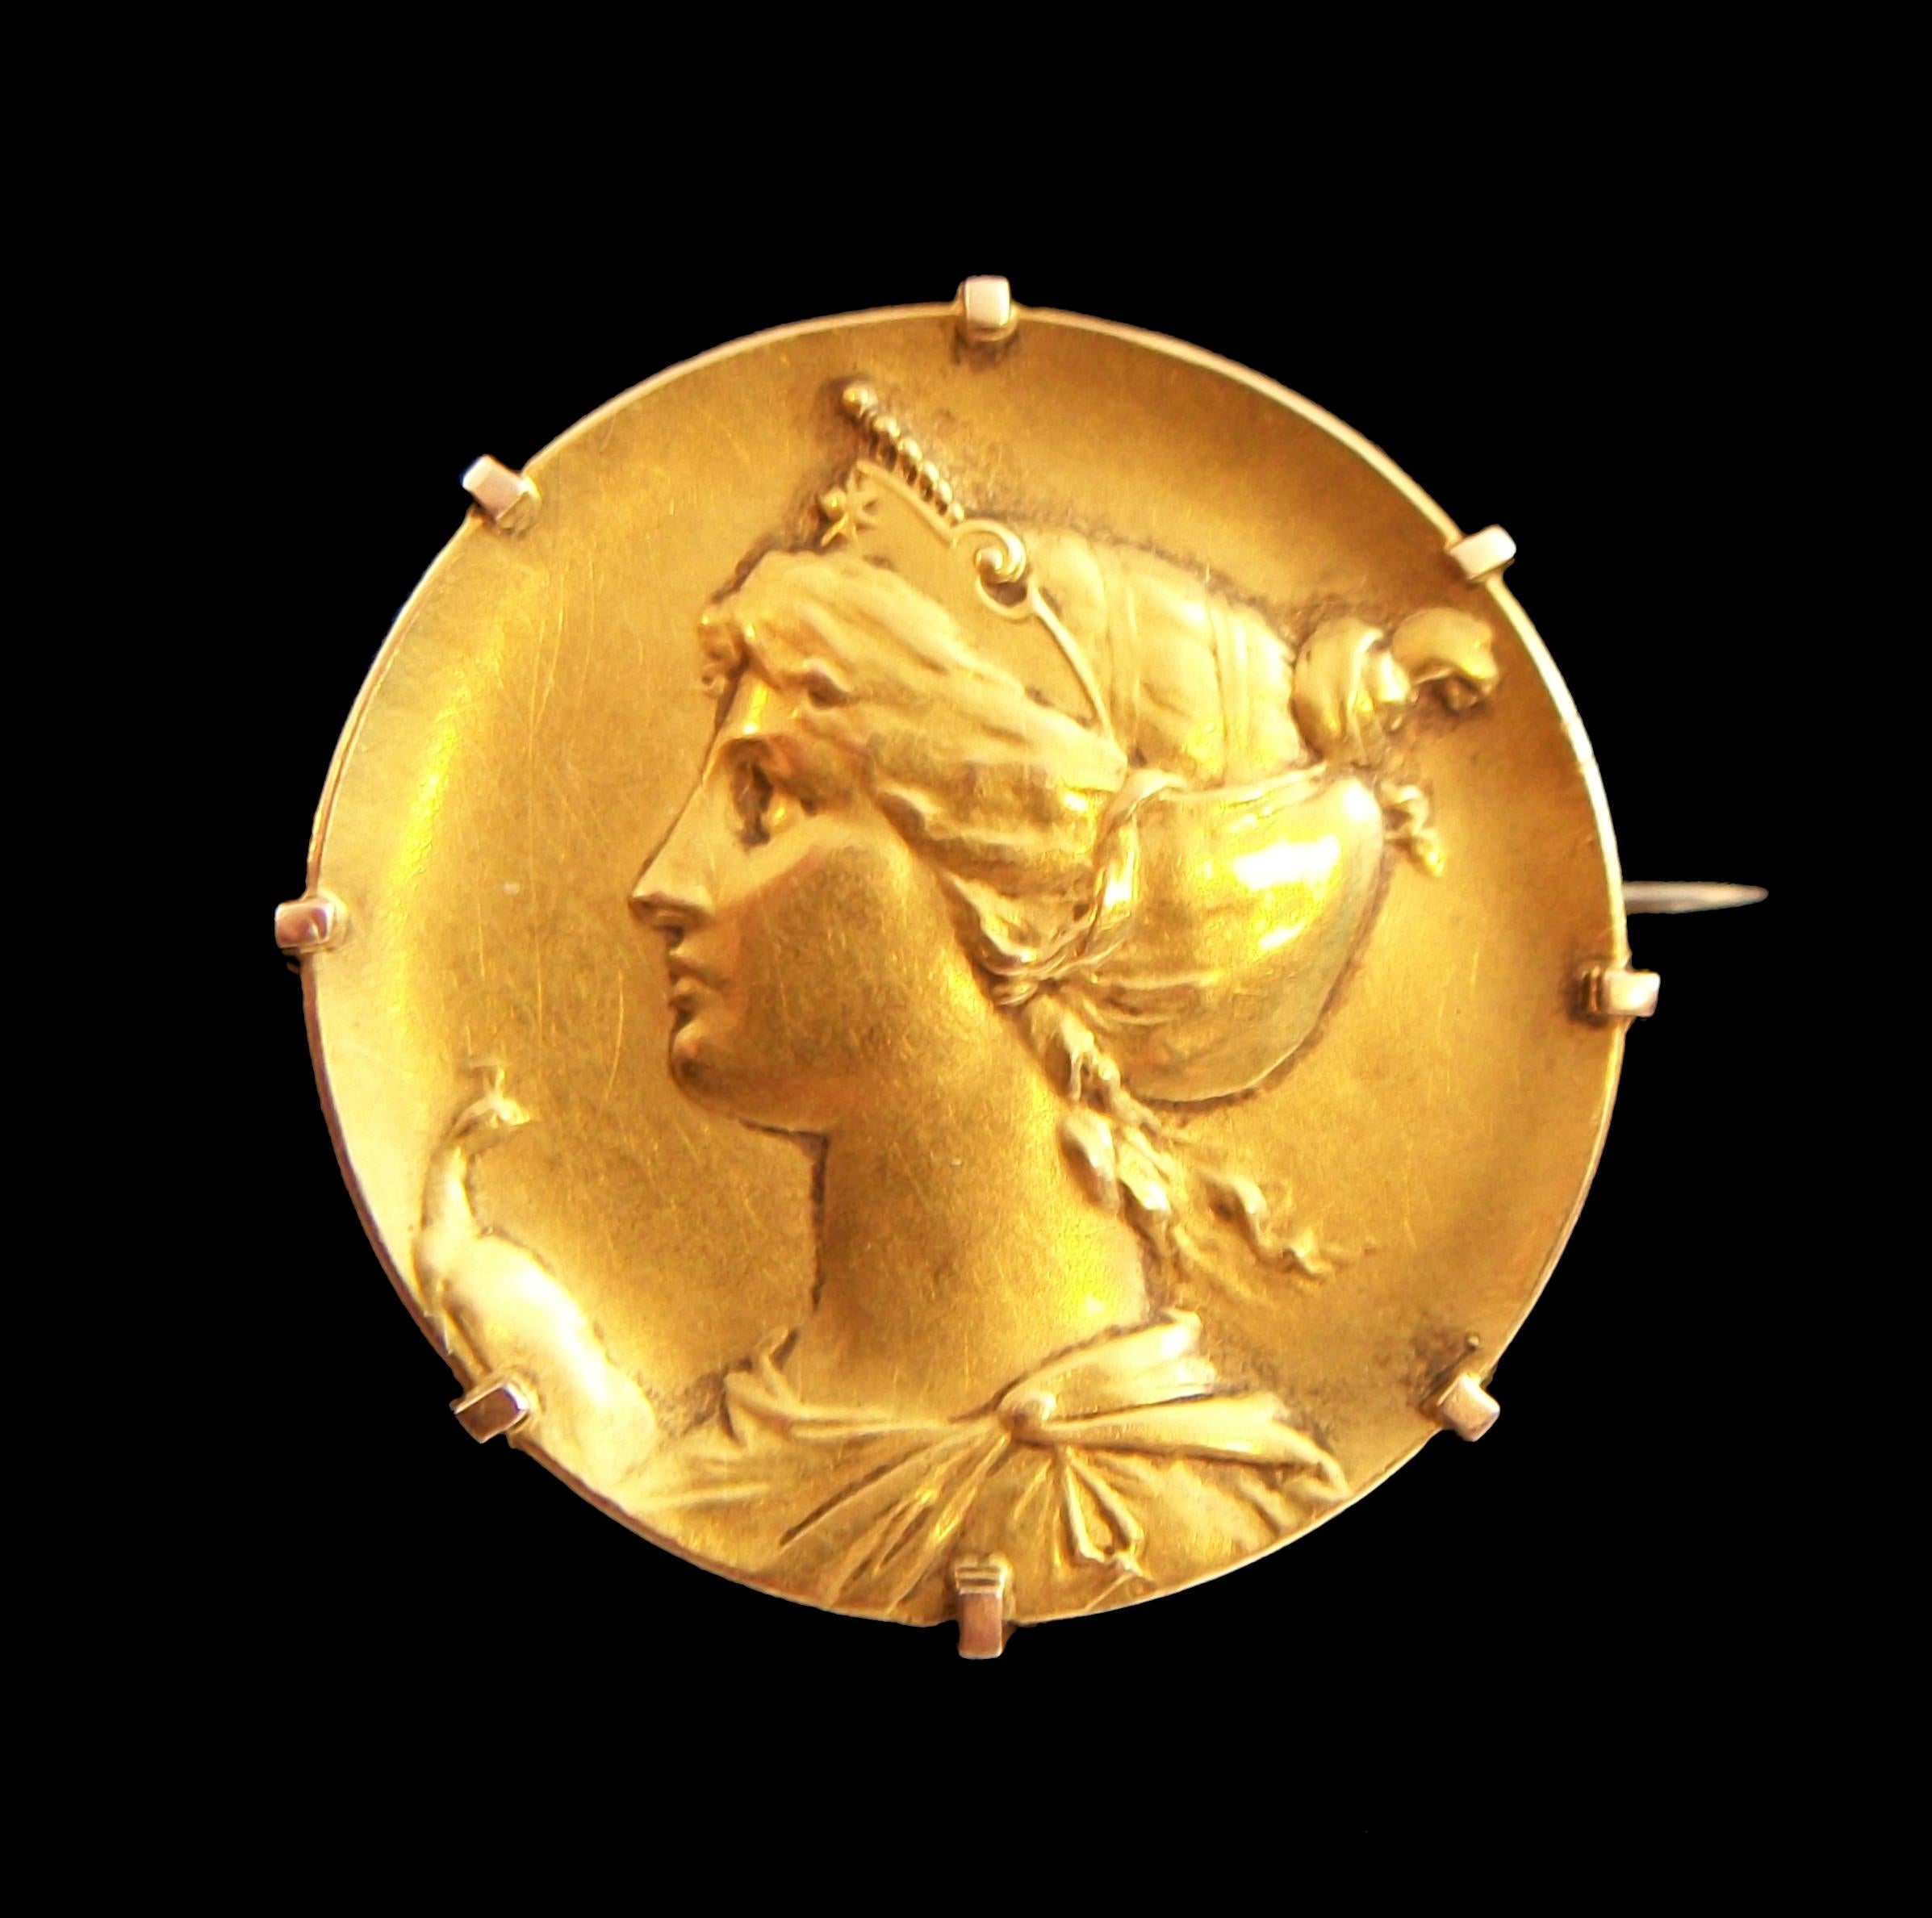 Broche portrait Art Nouveau en or jaune 18 carats - représentant un buste de style classique en relief avec un paon sur un côté - épingle en acier d'origine avec charnière en tube d'or et fermeture en C au dos - cachet de pureté de l'or français sur